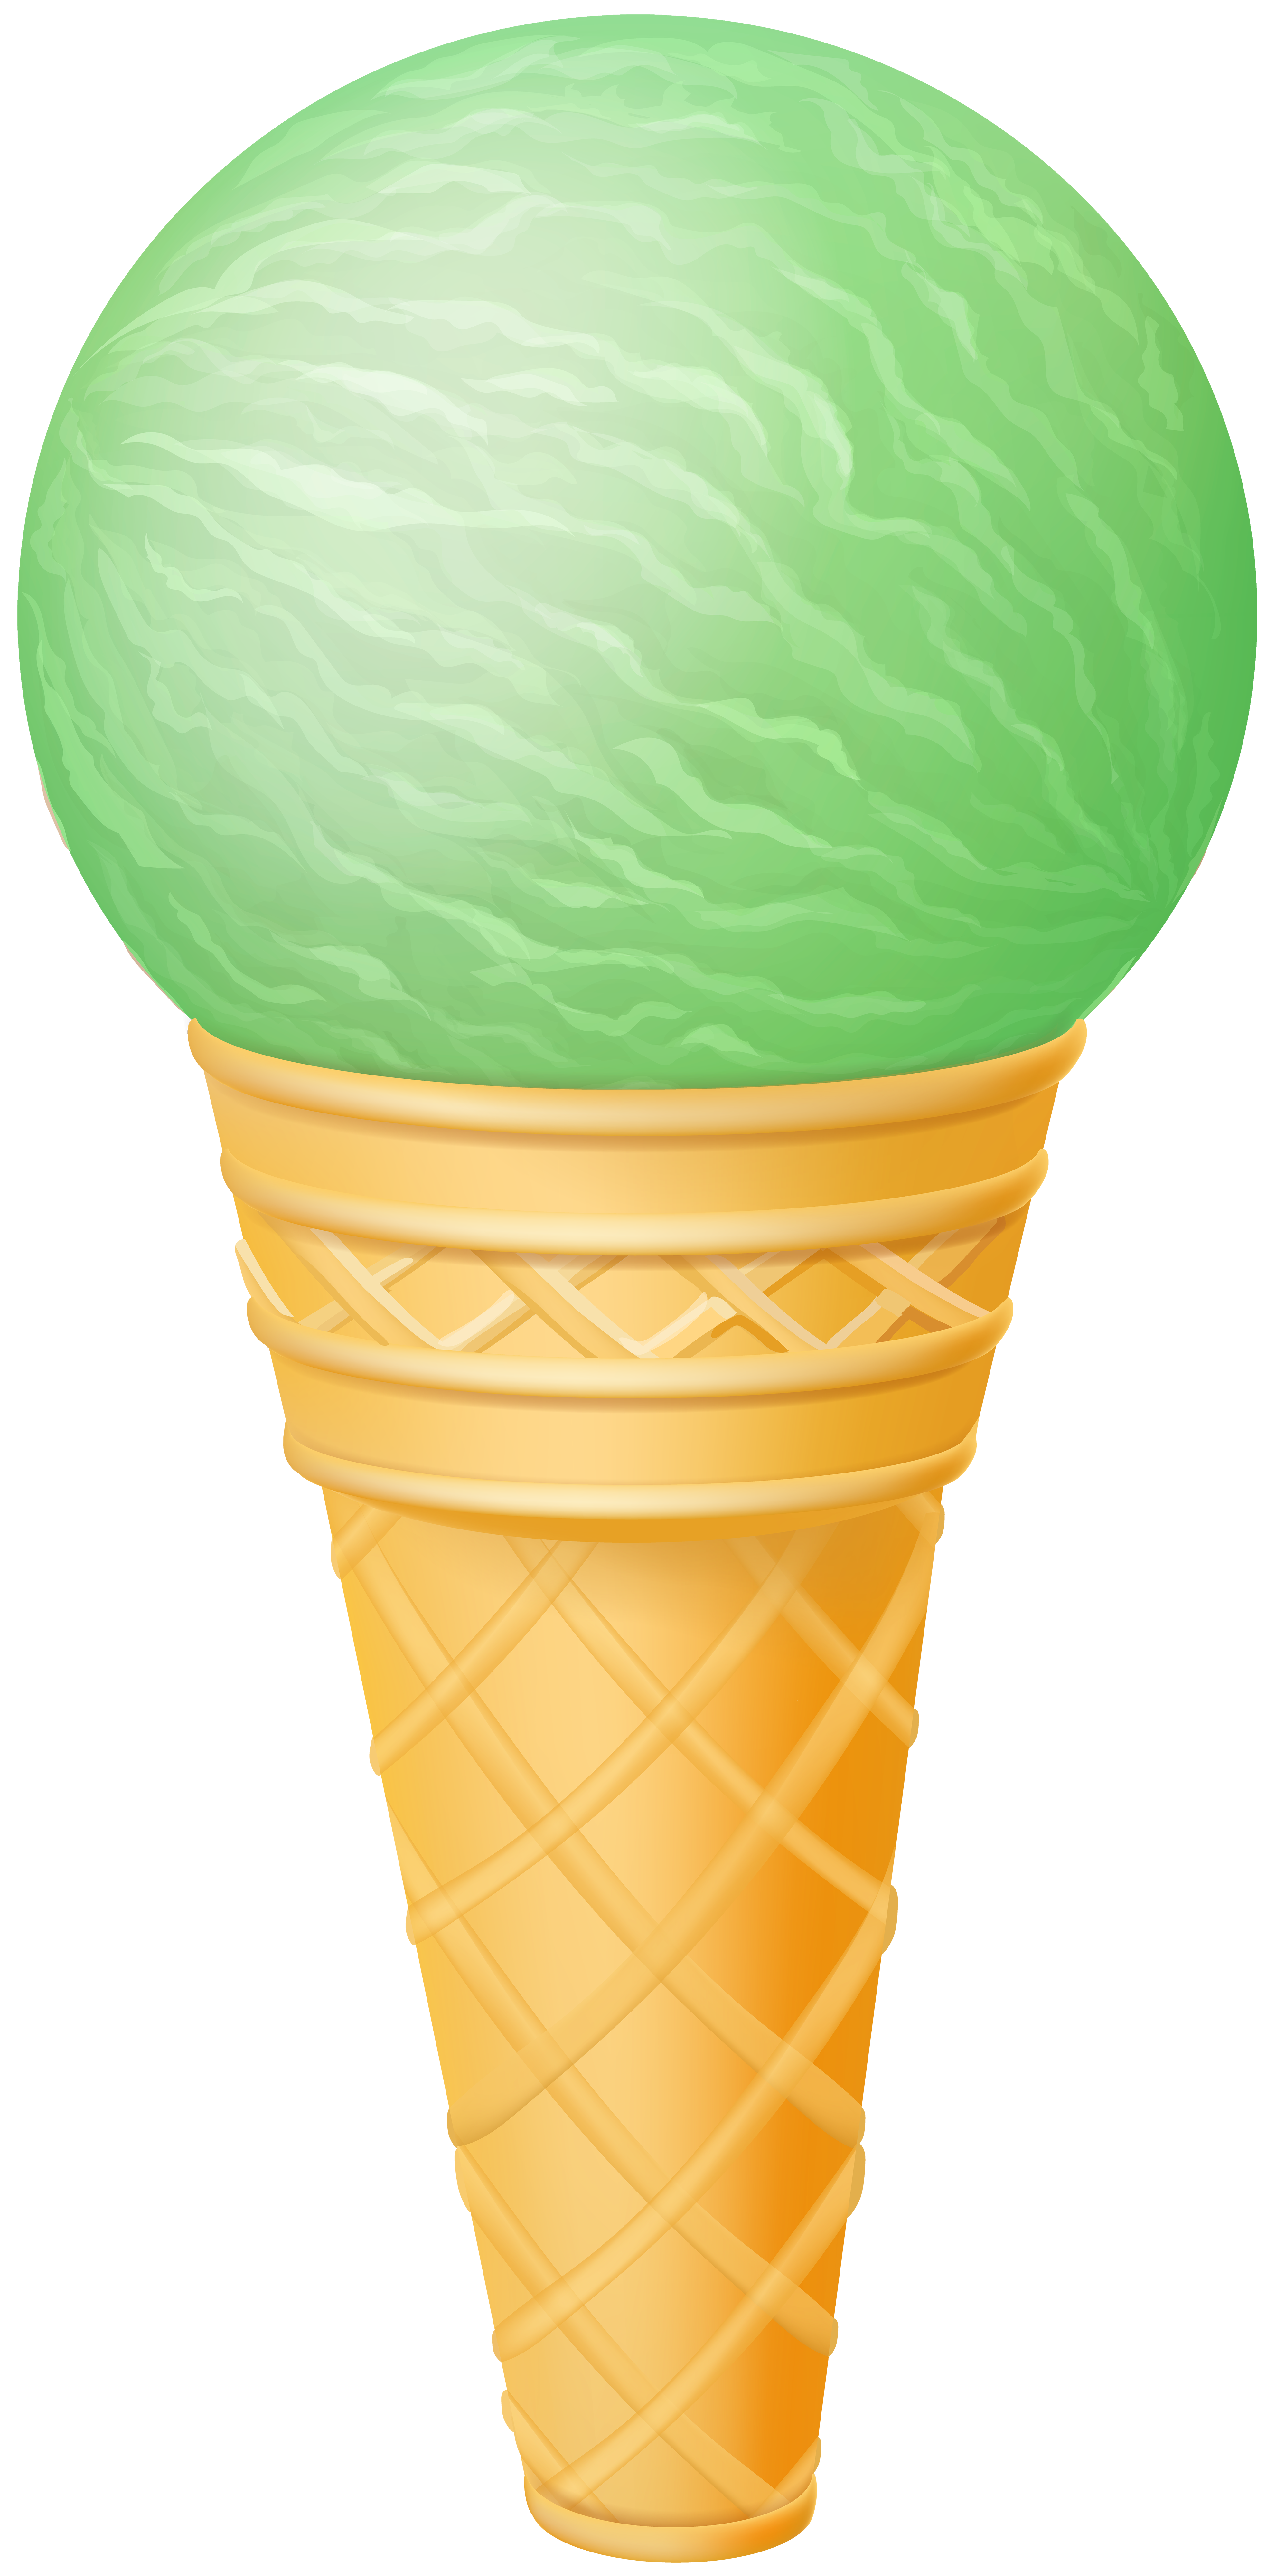 Ice cream mint.